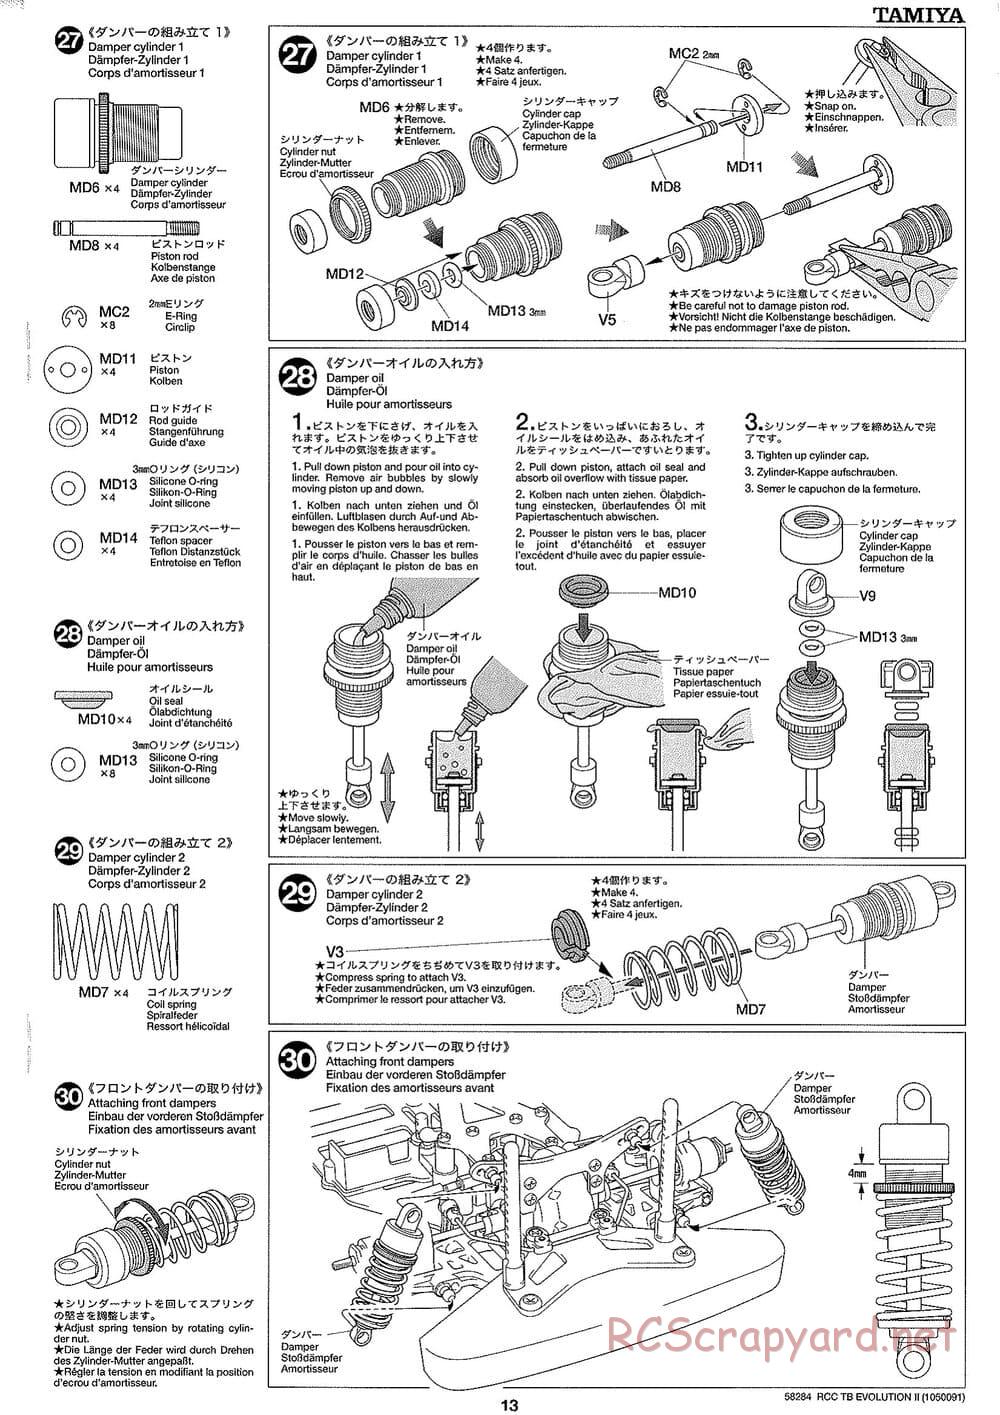 Tamiya - TB Evolution II Chassis - Manual - Page 13